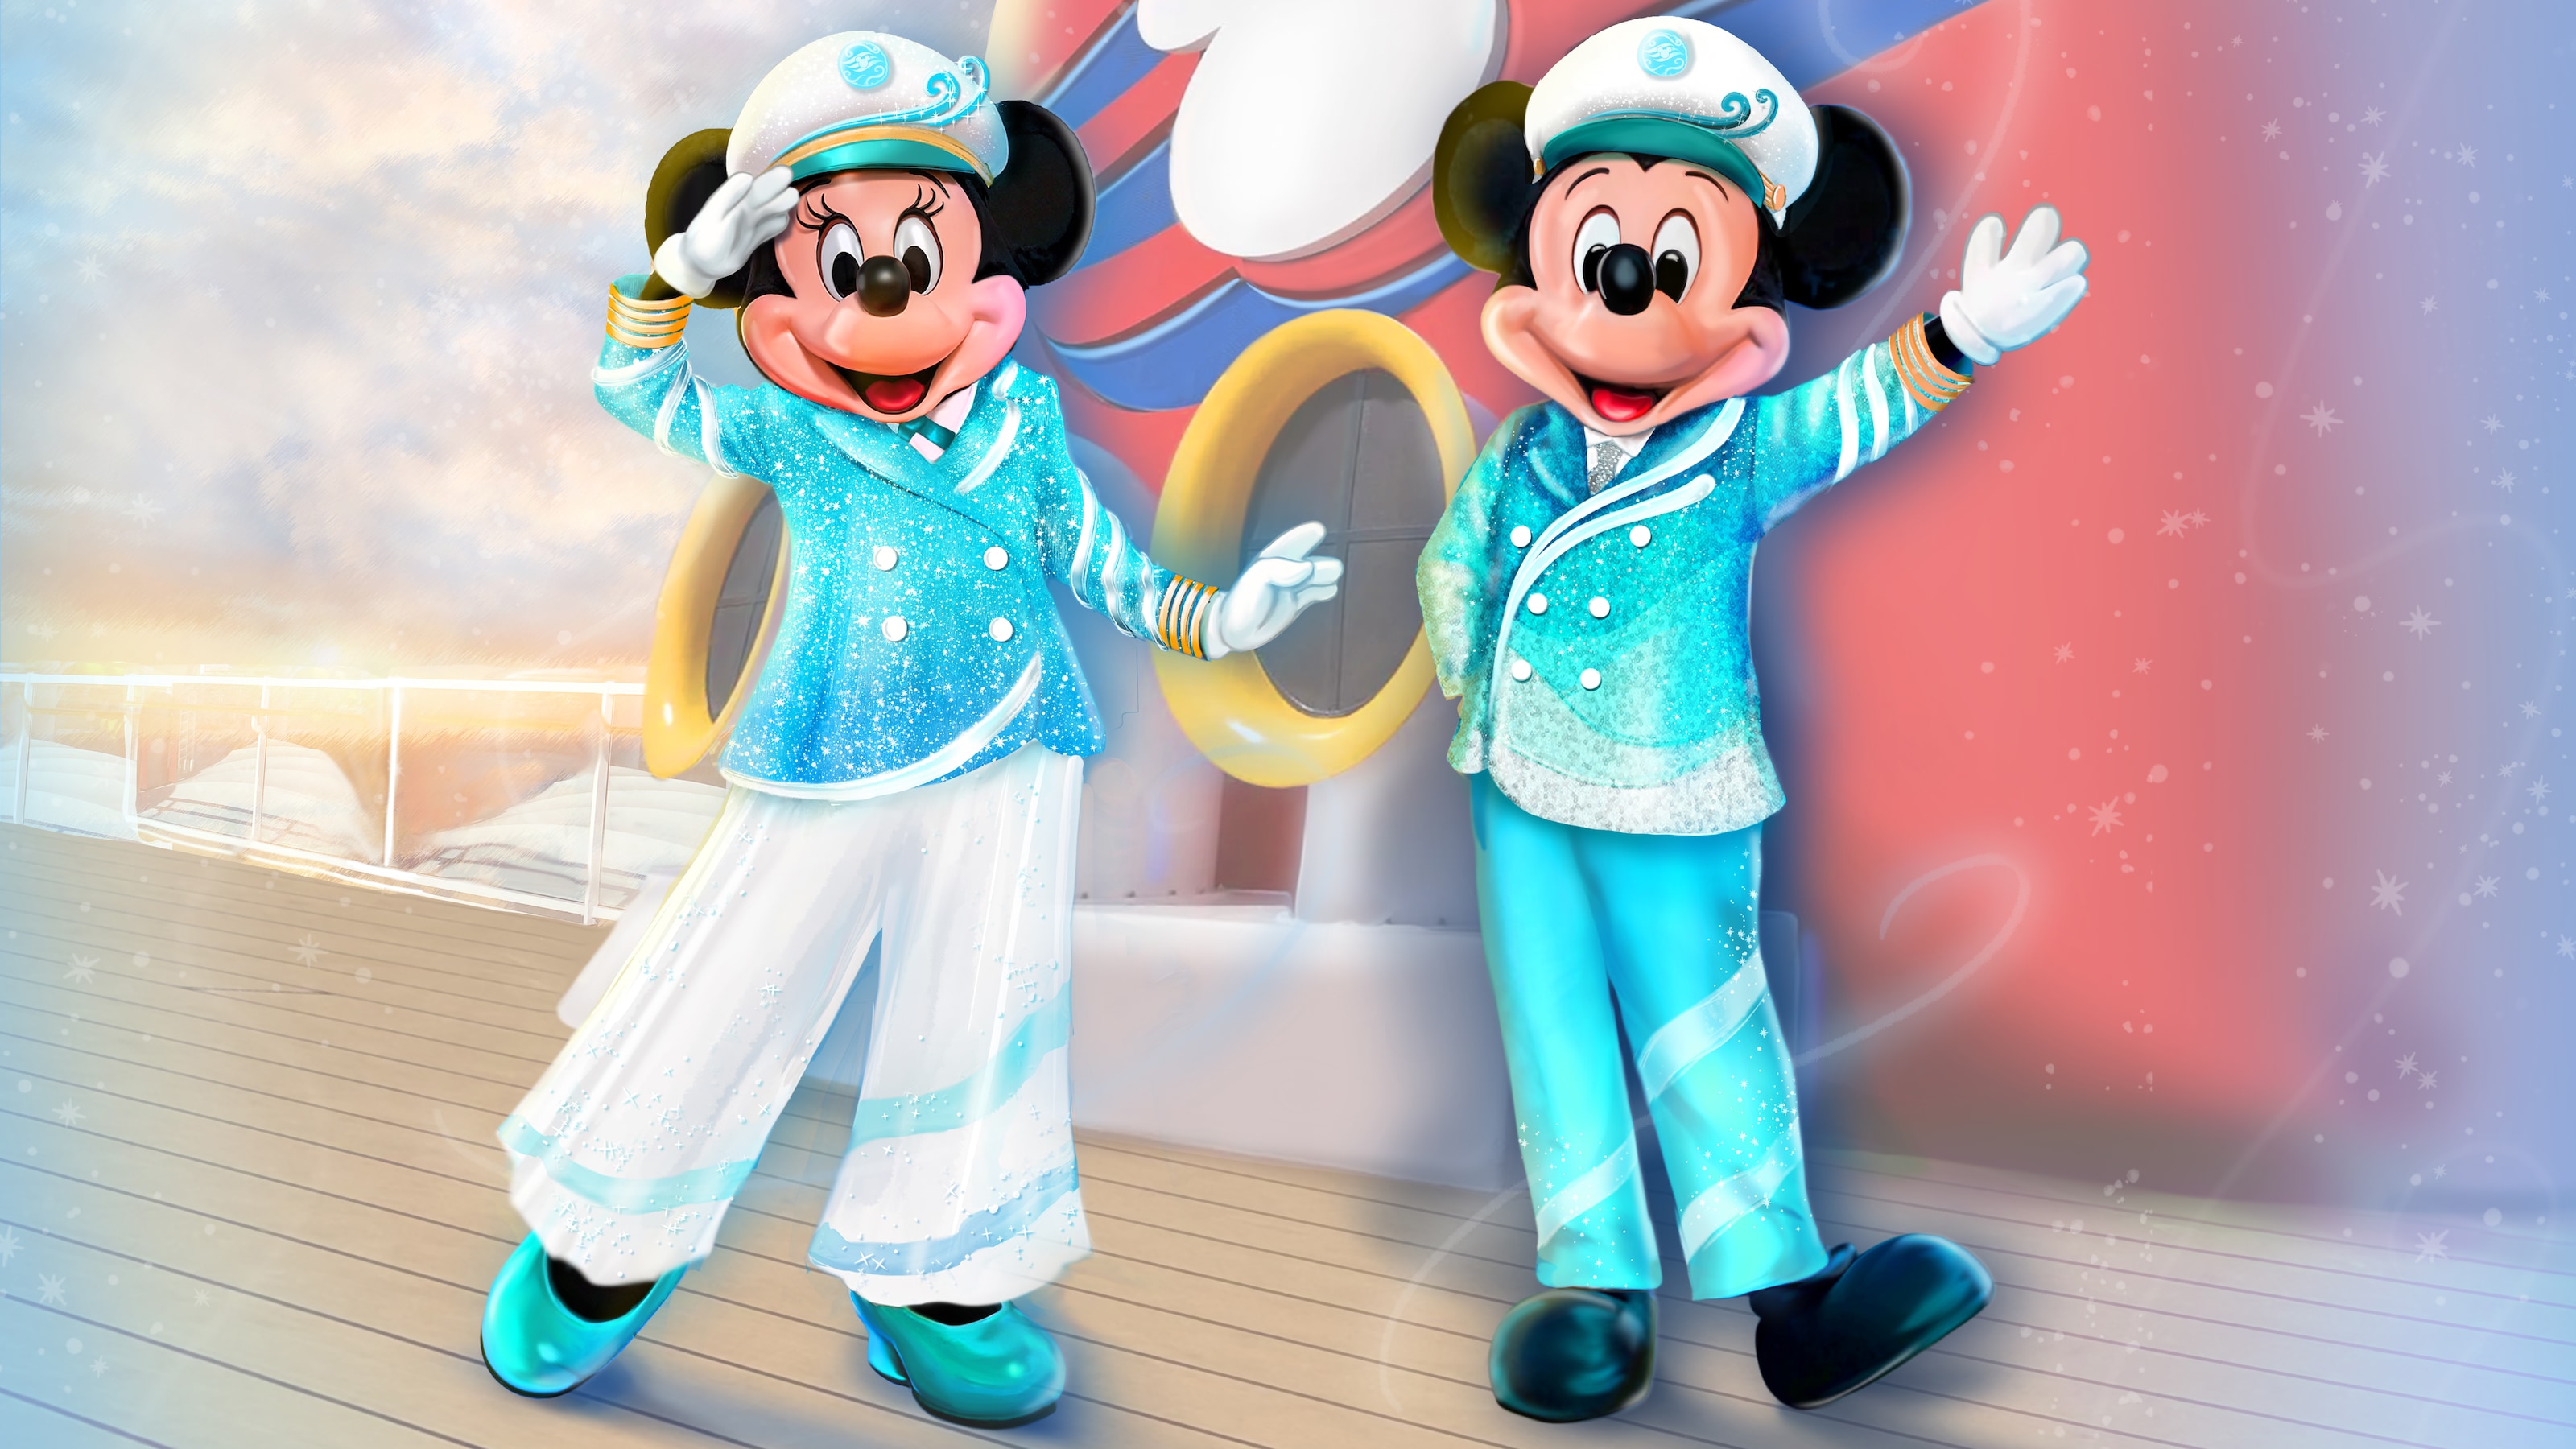 ディズニー・クルーズラインの客船のデッキで挨拶をするミニーと手を振るミッキーのイラスト